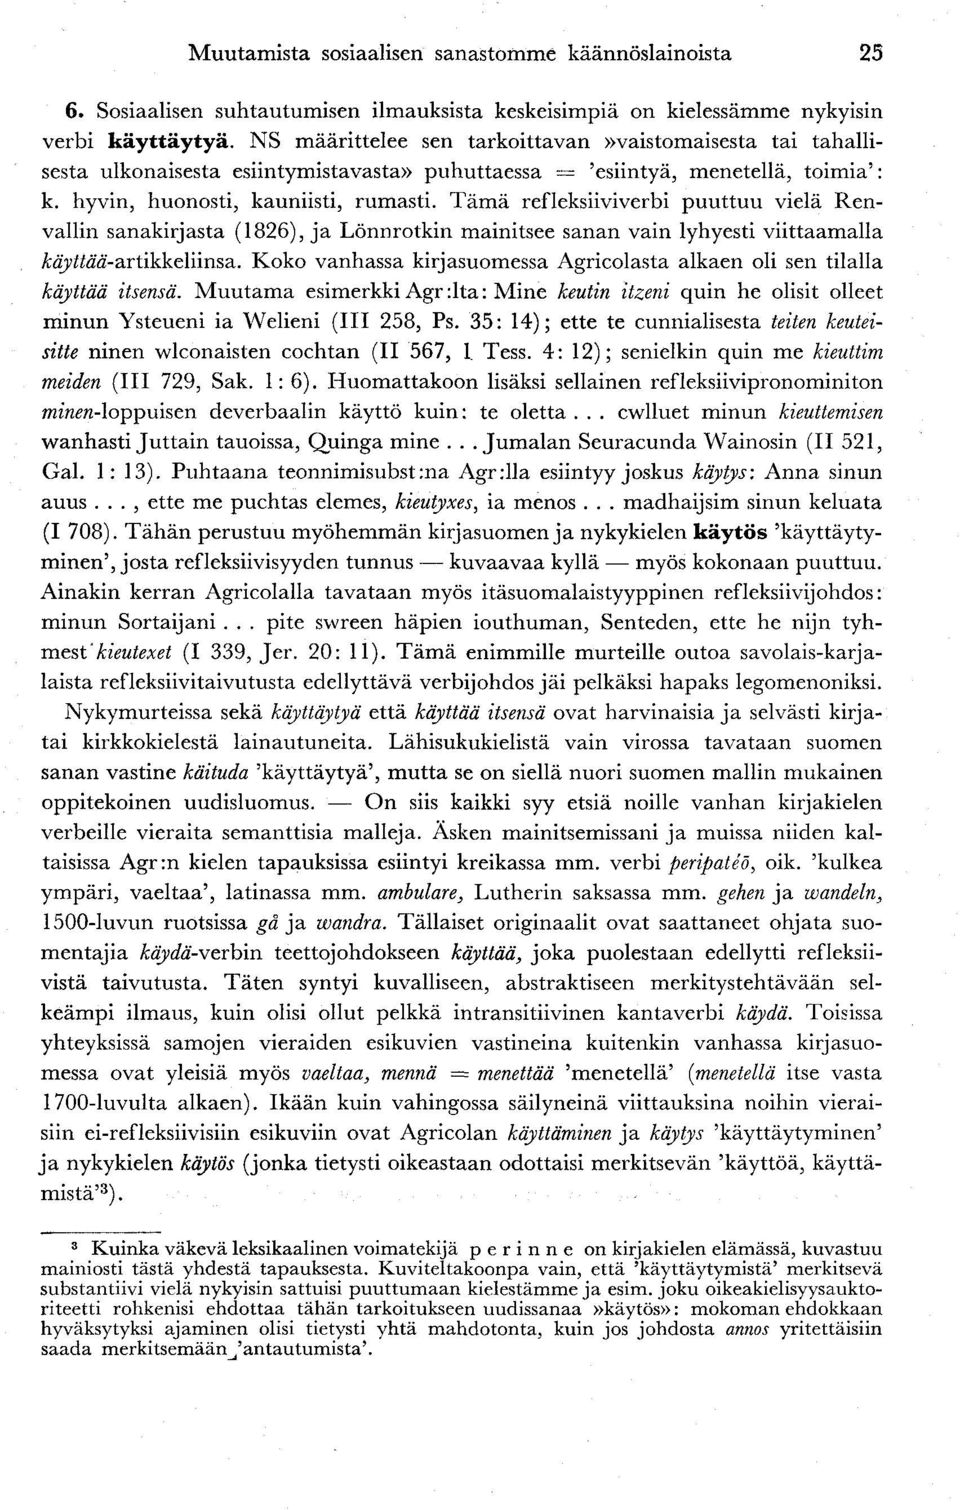 Tämä refleksiiviverbi puuttuu vielä Renvallin sanakirjasta (1826), ja Lönnrotkin mainitsee sanan vain lyhyesti viittaamalla ÄajMäö-artikkeliinsa.